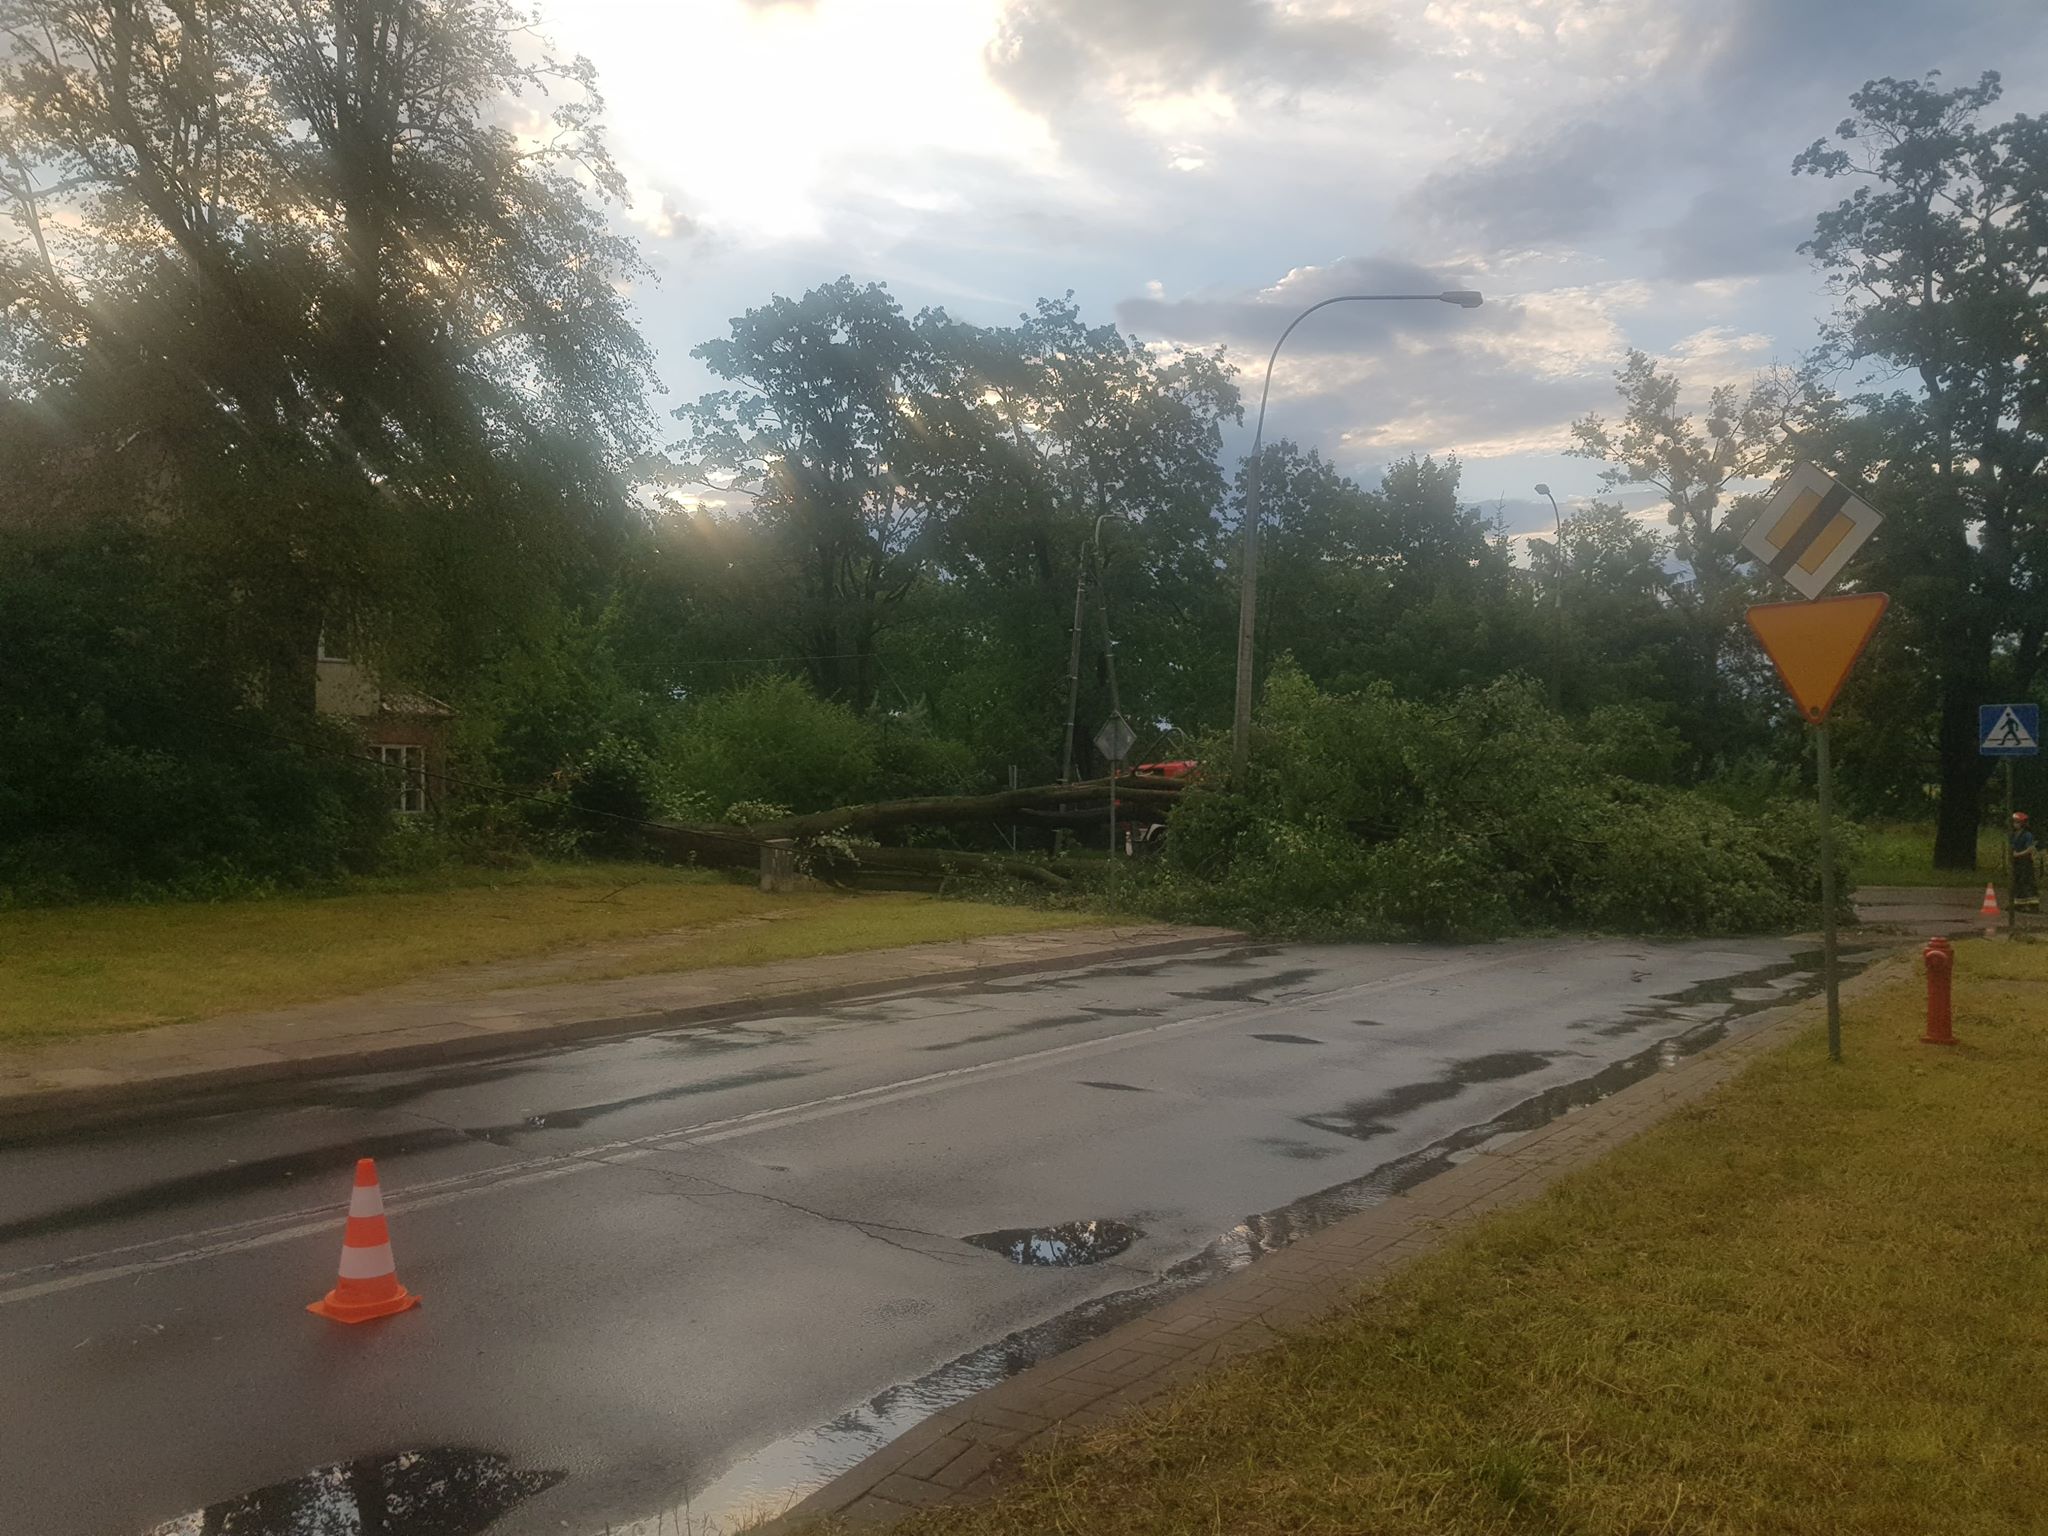 Burza przeszła przez Olsztyn siejąc zniszczenie. Powaliła masowo drzewa